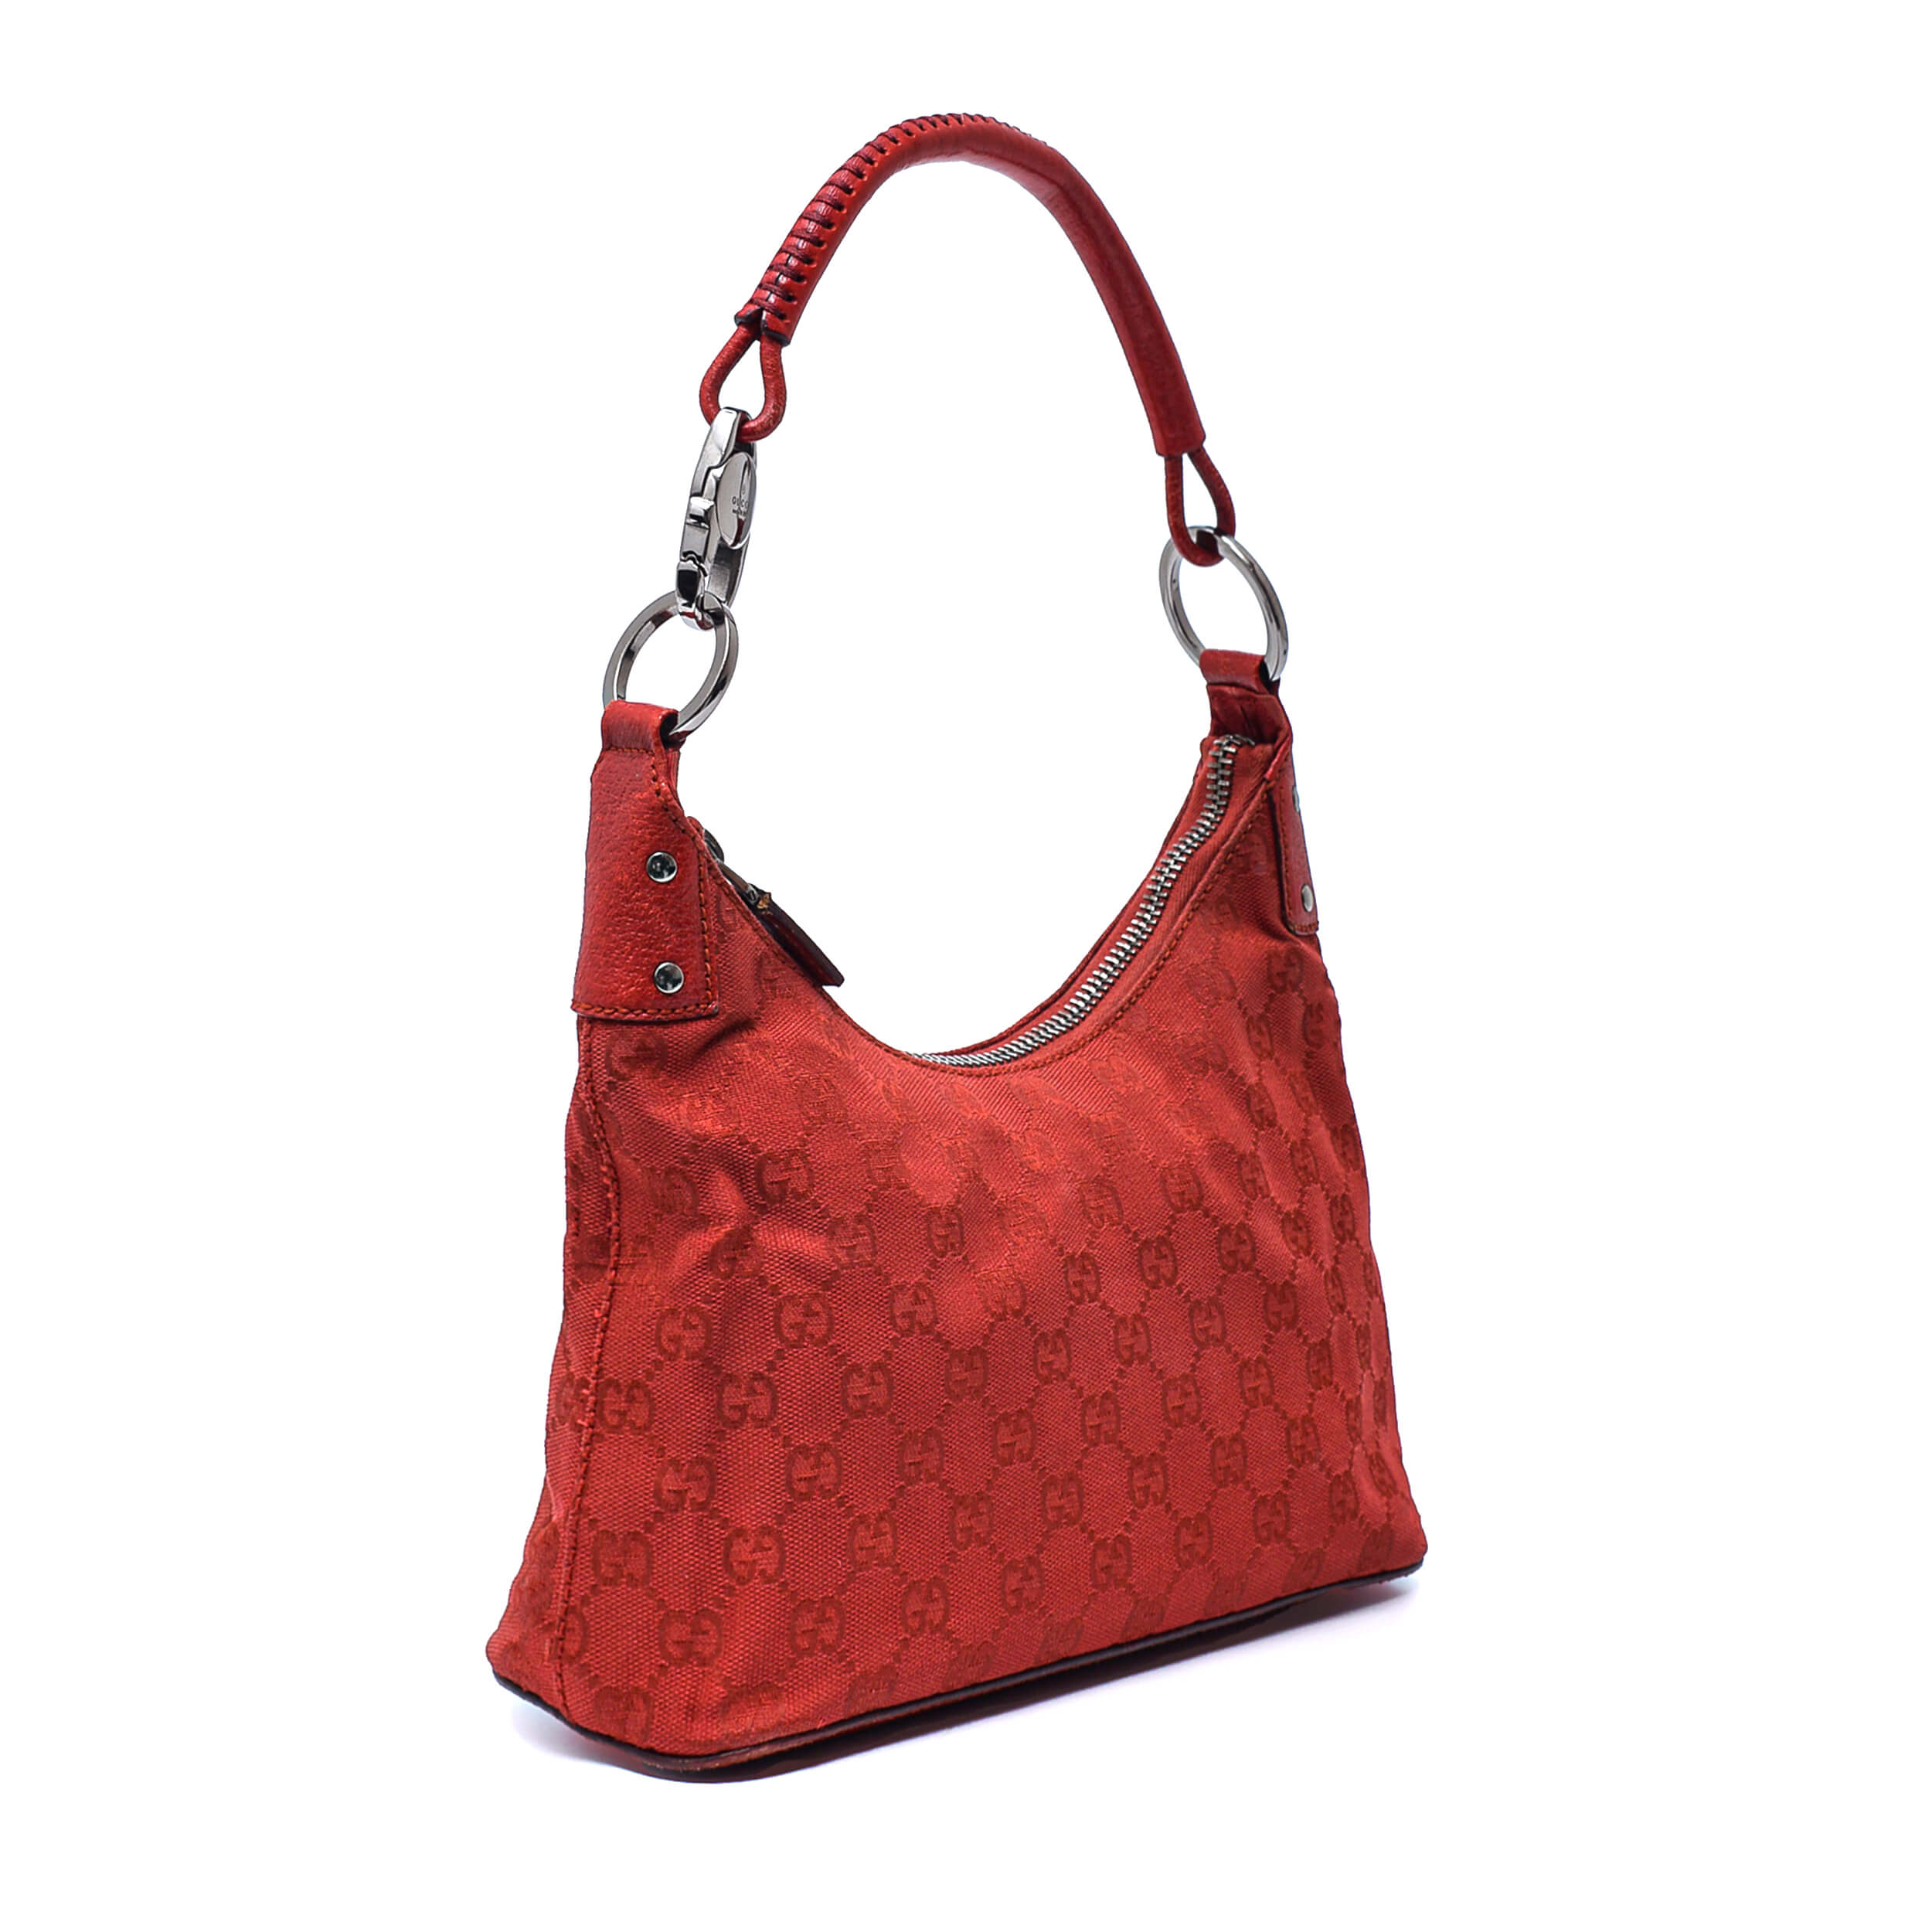 Gucci - Red GG Supreme Canvas Small Hobo Bag